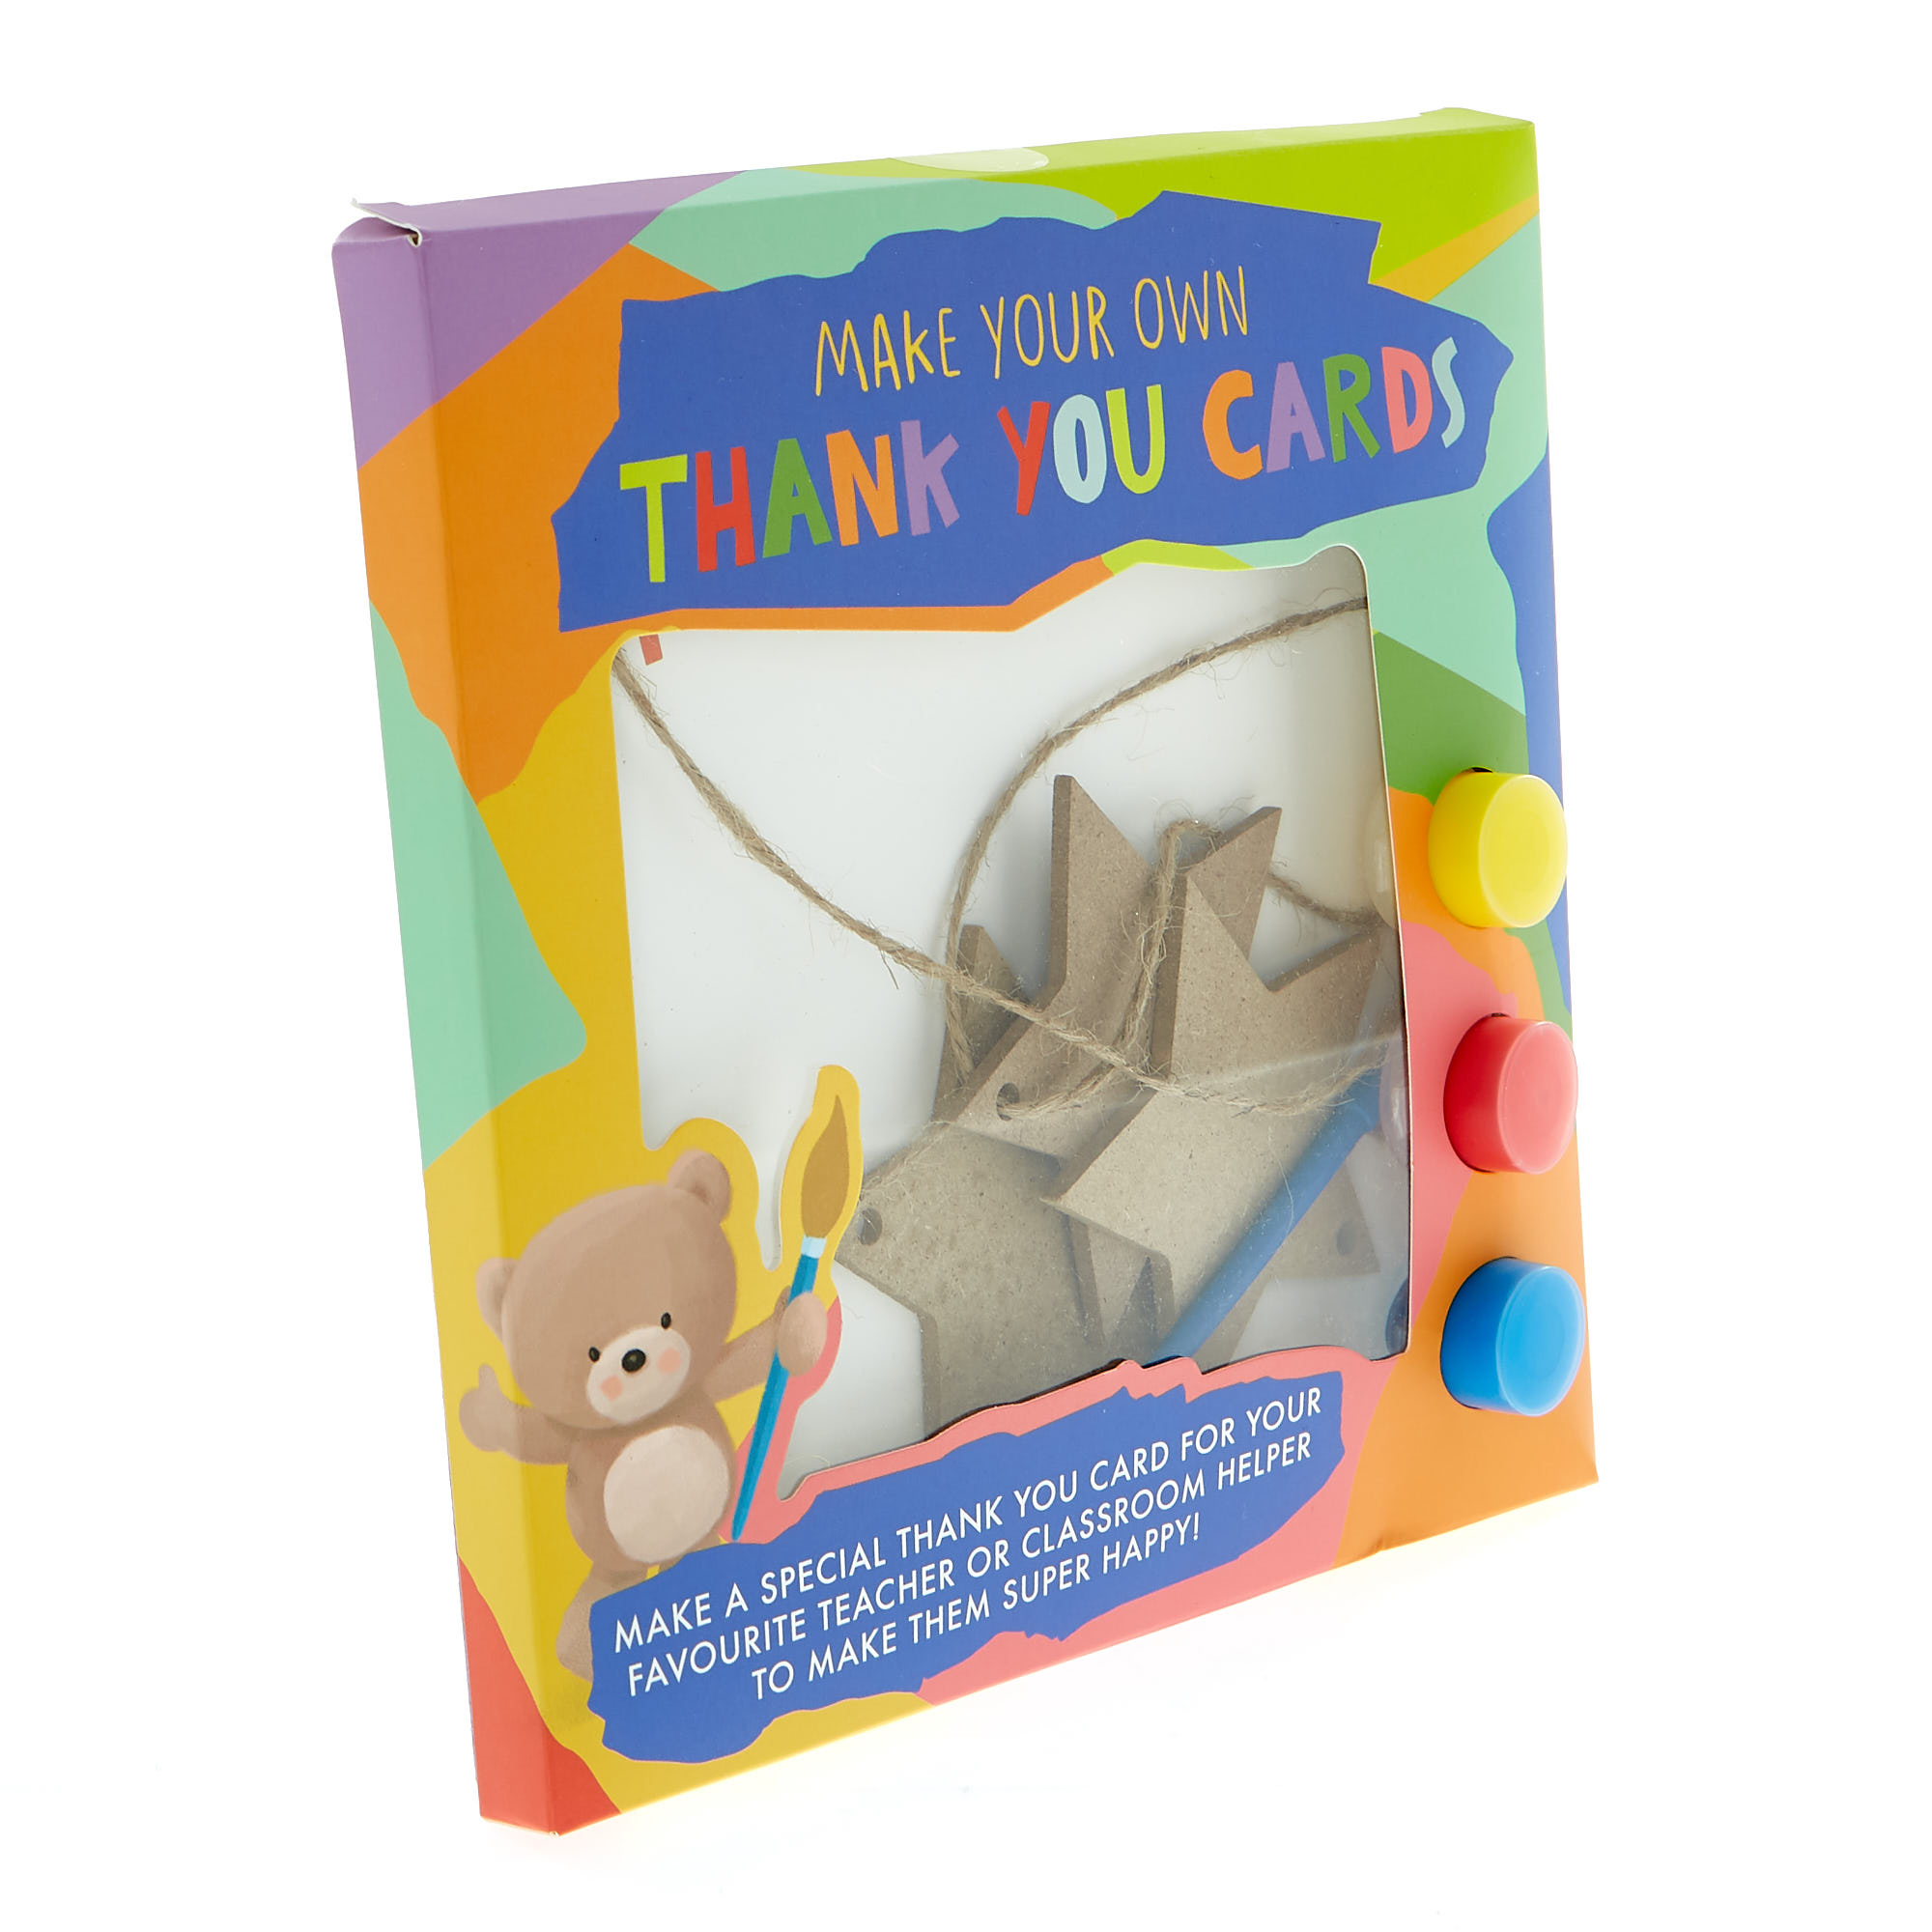 design-thank-you-cards-online-thank-you-card-maker-free-crello